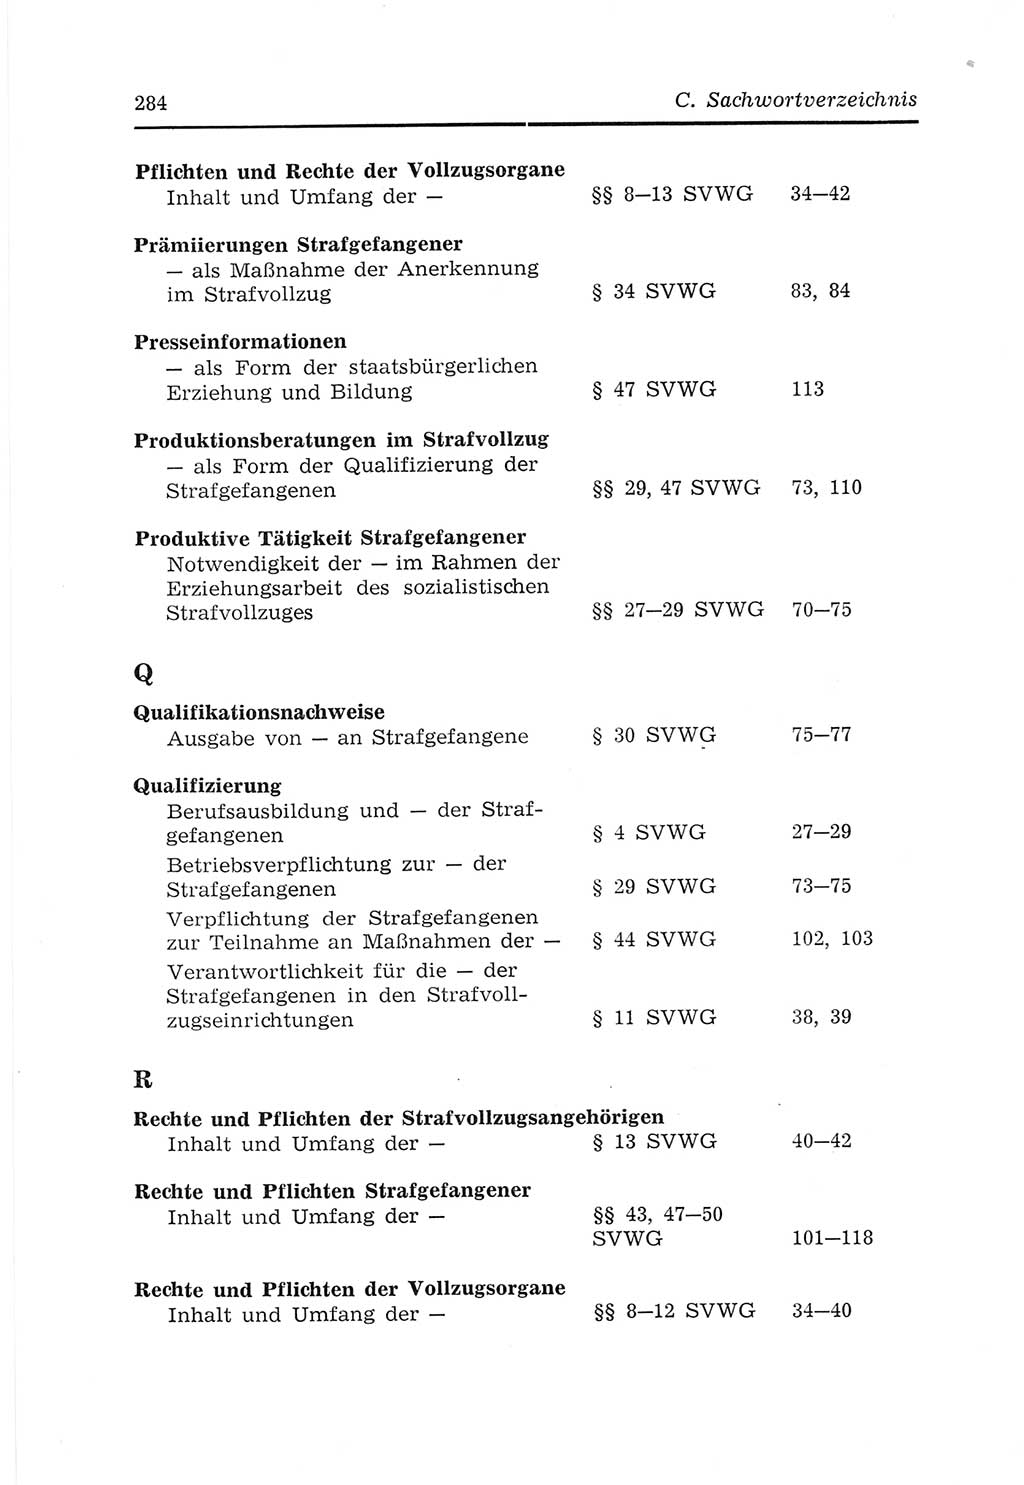 Strafvollzugs- und Wiedereingliederungsgesetz (SVWG) der Deutschen Demokratischen Republik (DDR) 1968, Seite 284 (SVWG DDR 1968, S. 284)